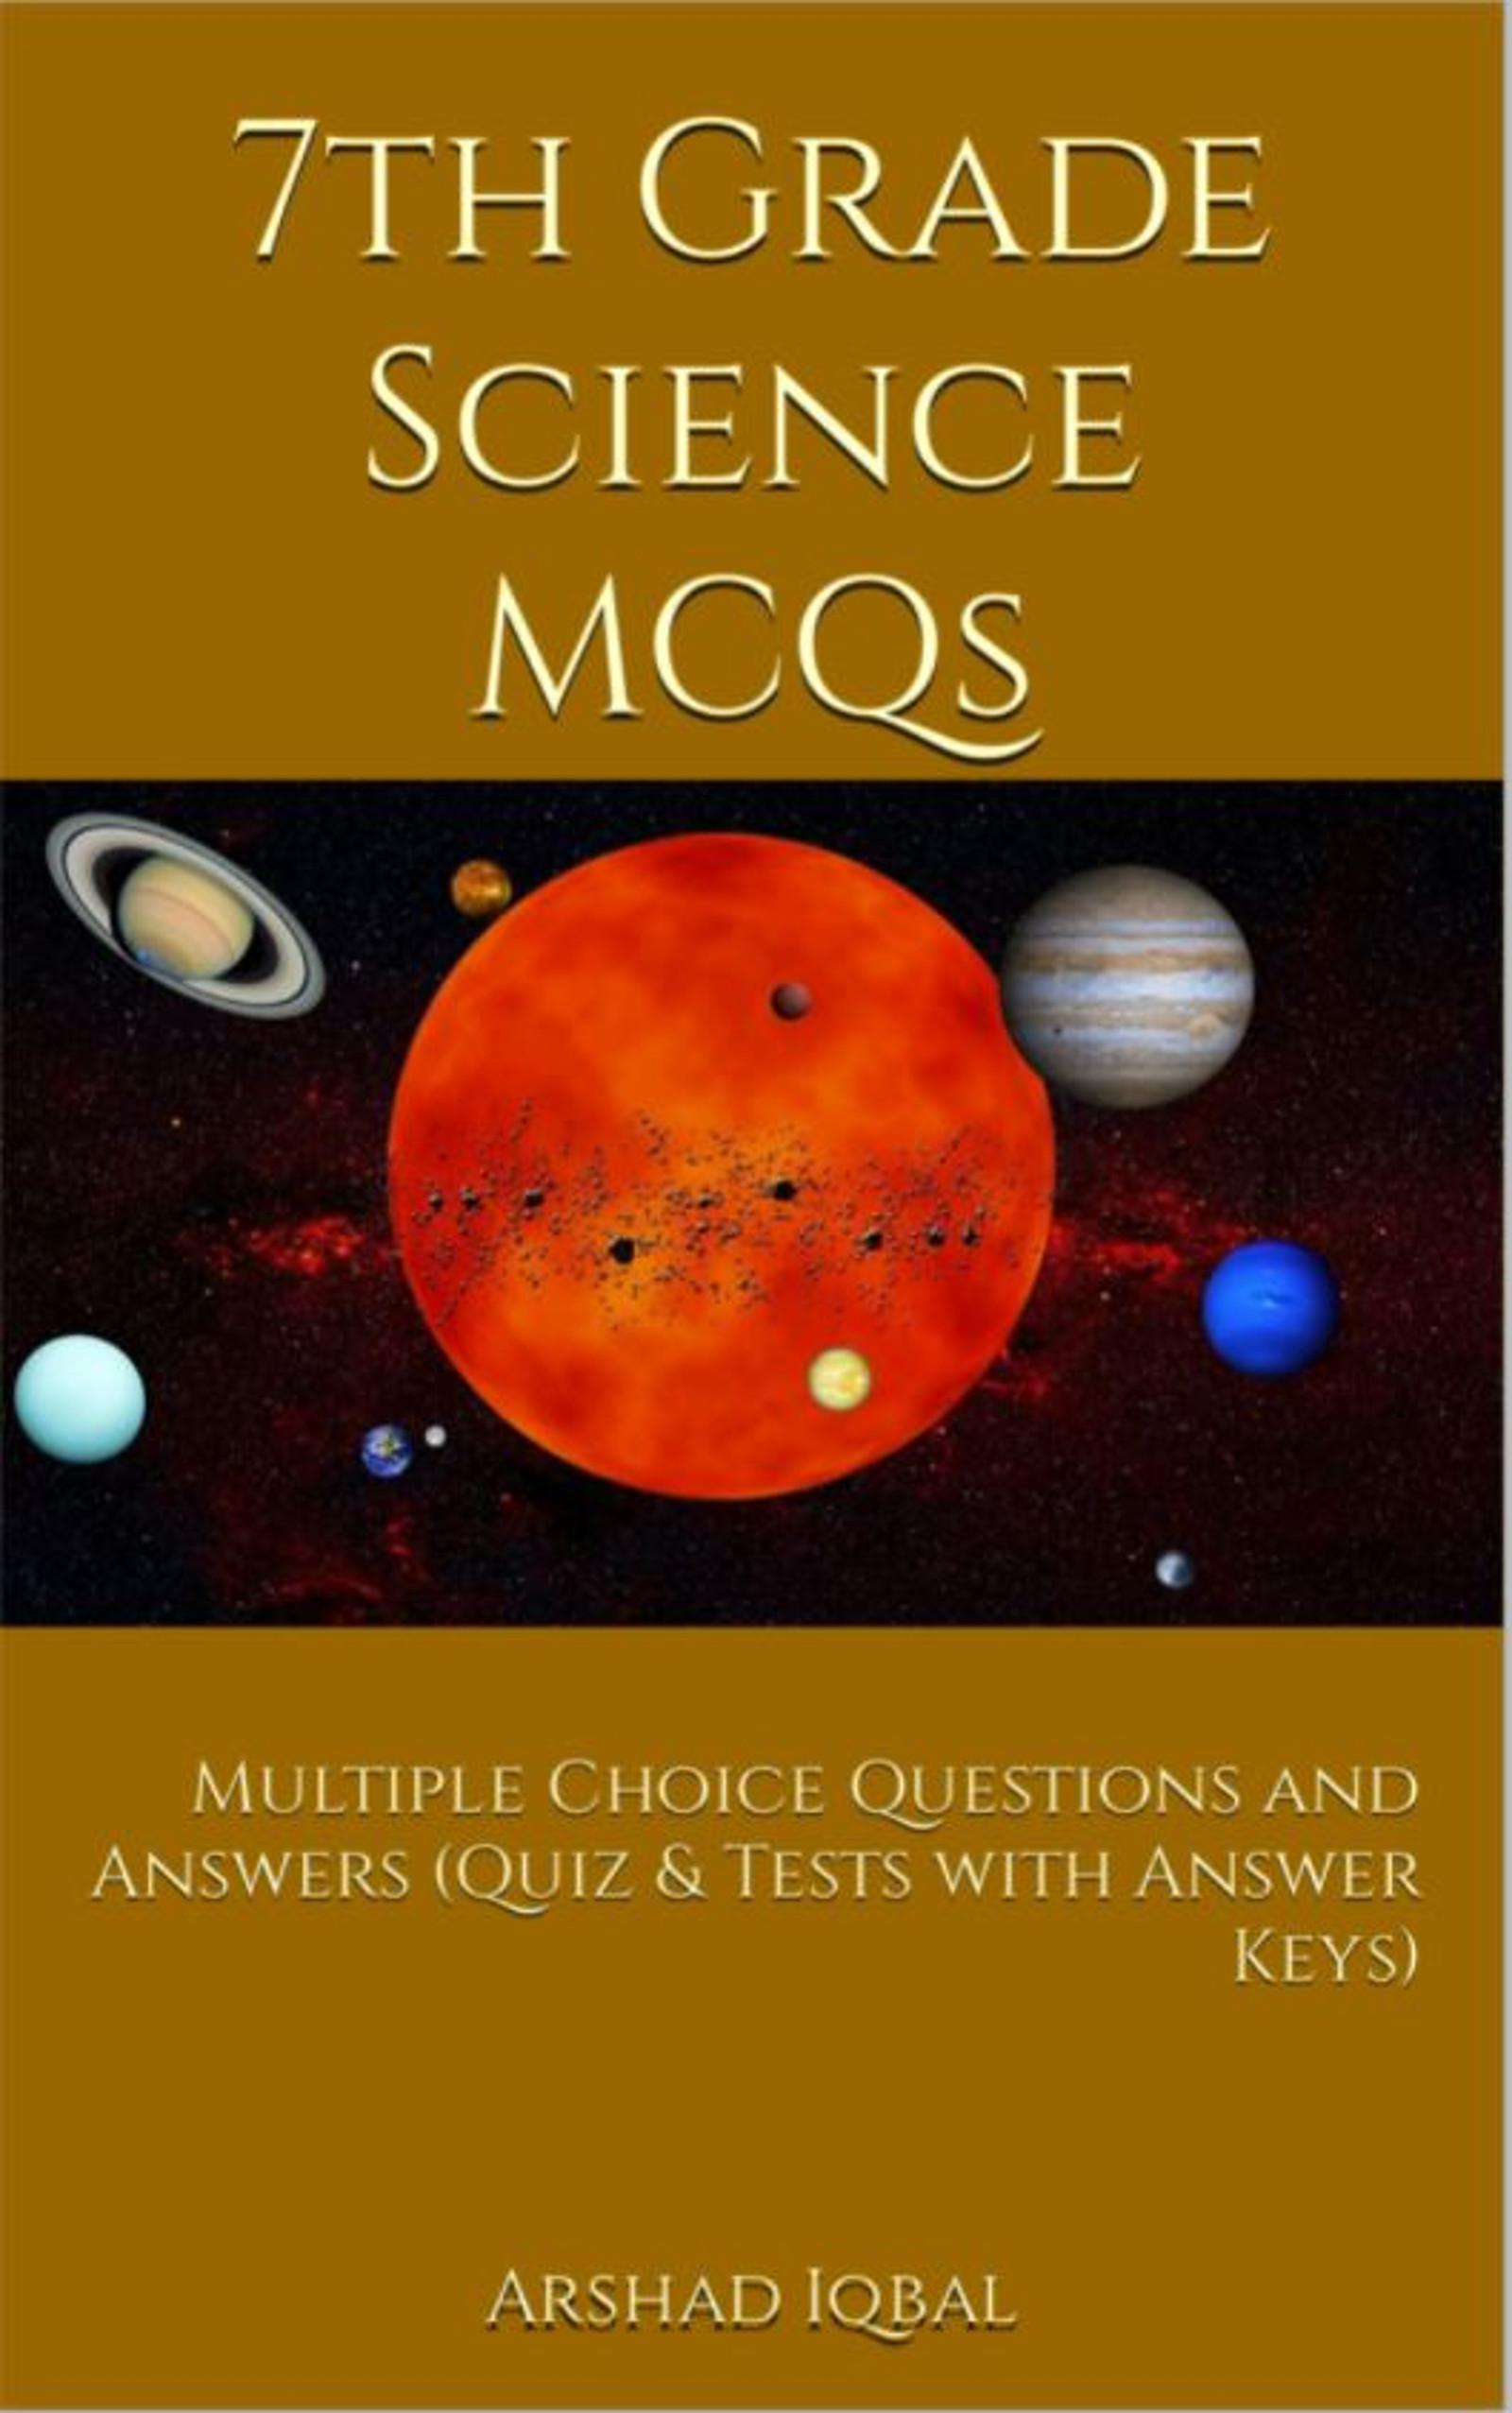 7th Grade Science MCQ Book PDF